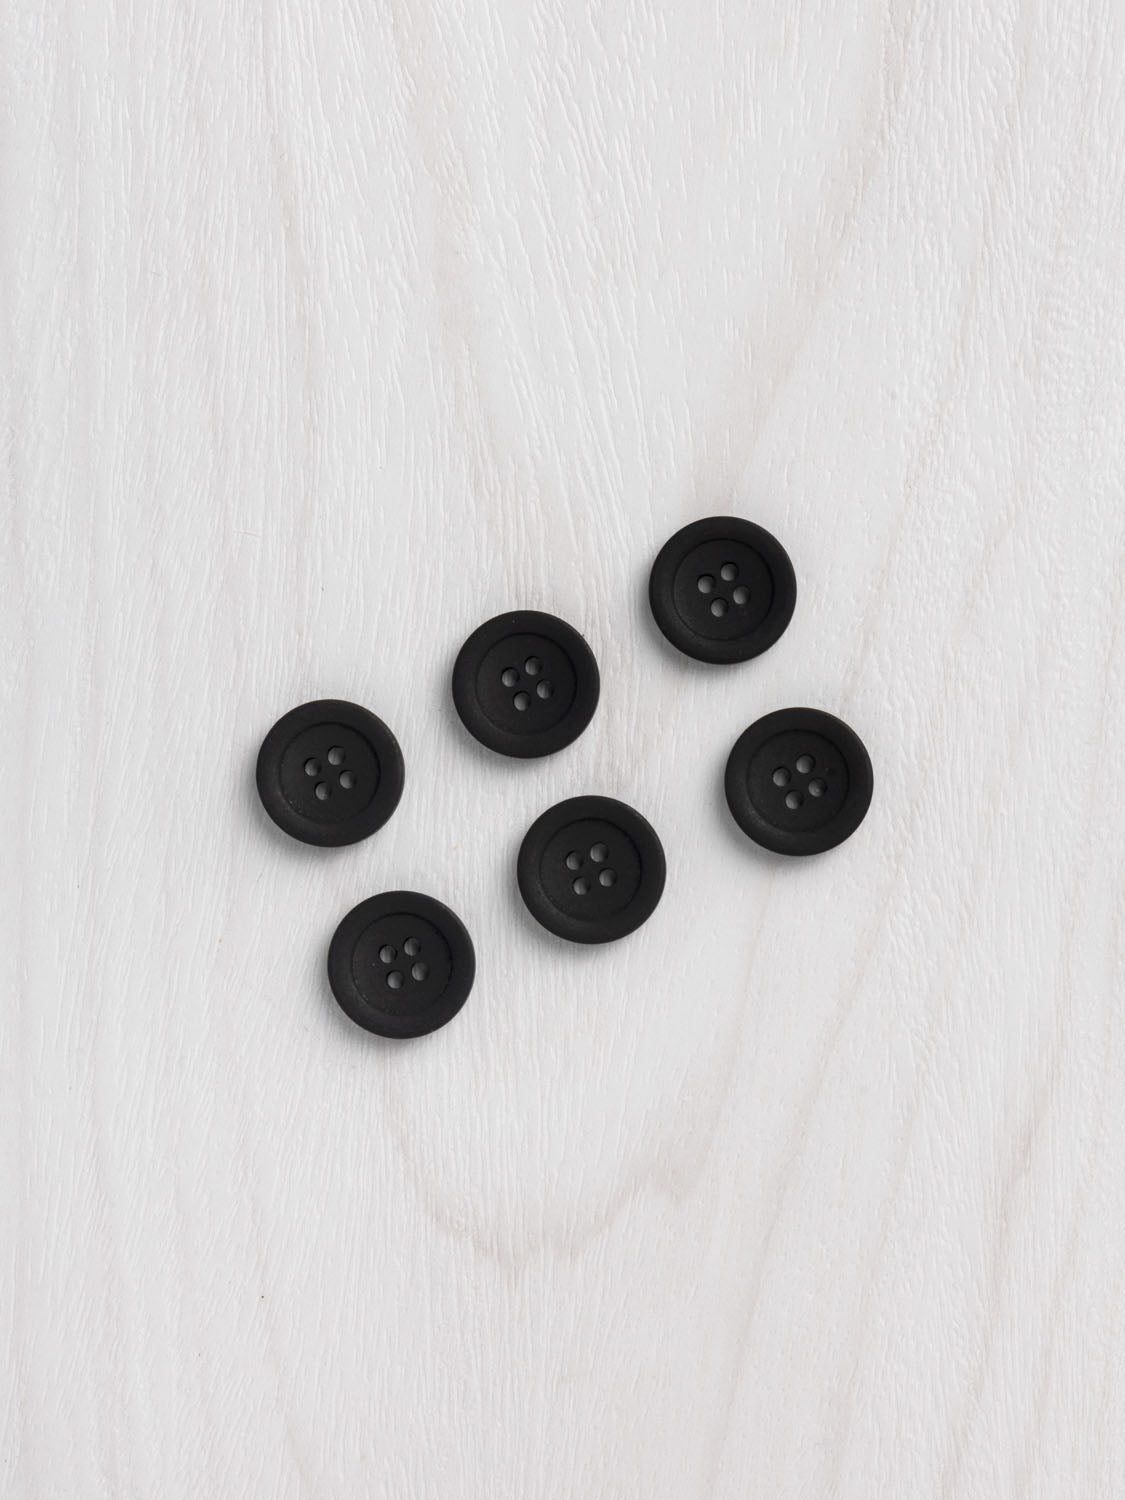 Hemp 16mm (5/8) Buttons - 6 pack